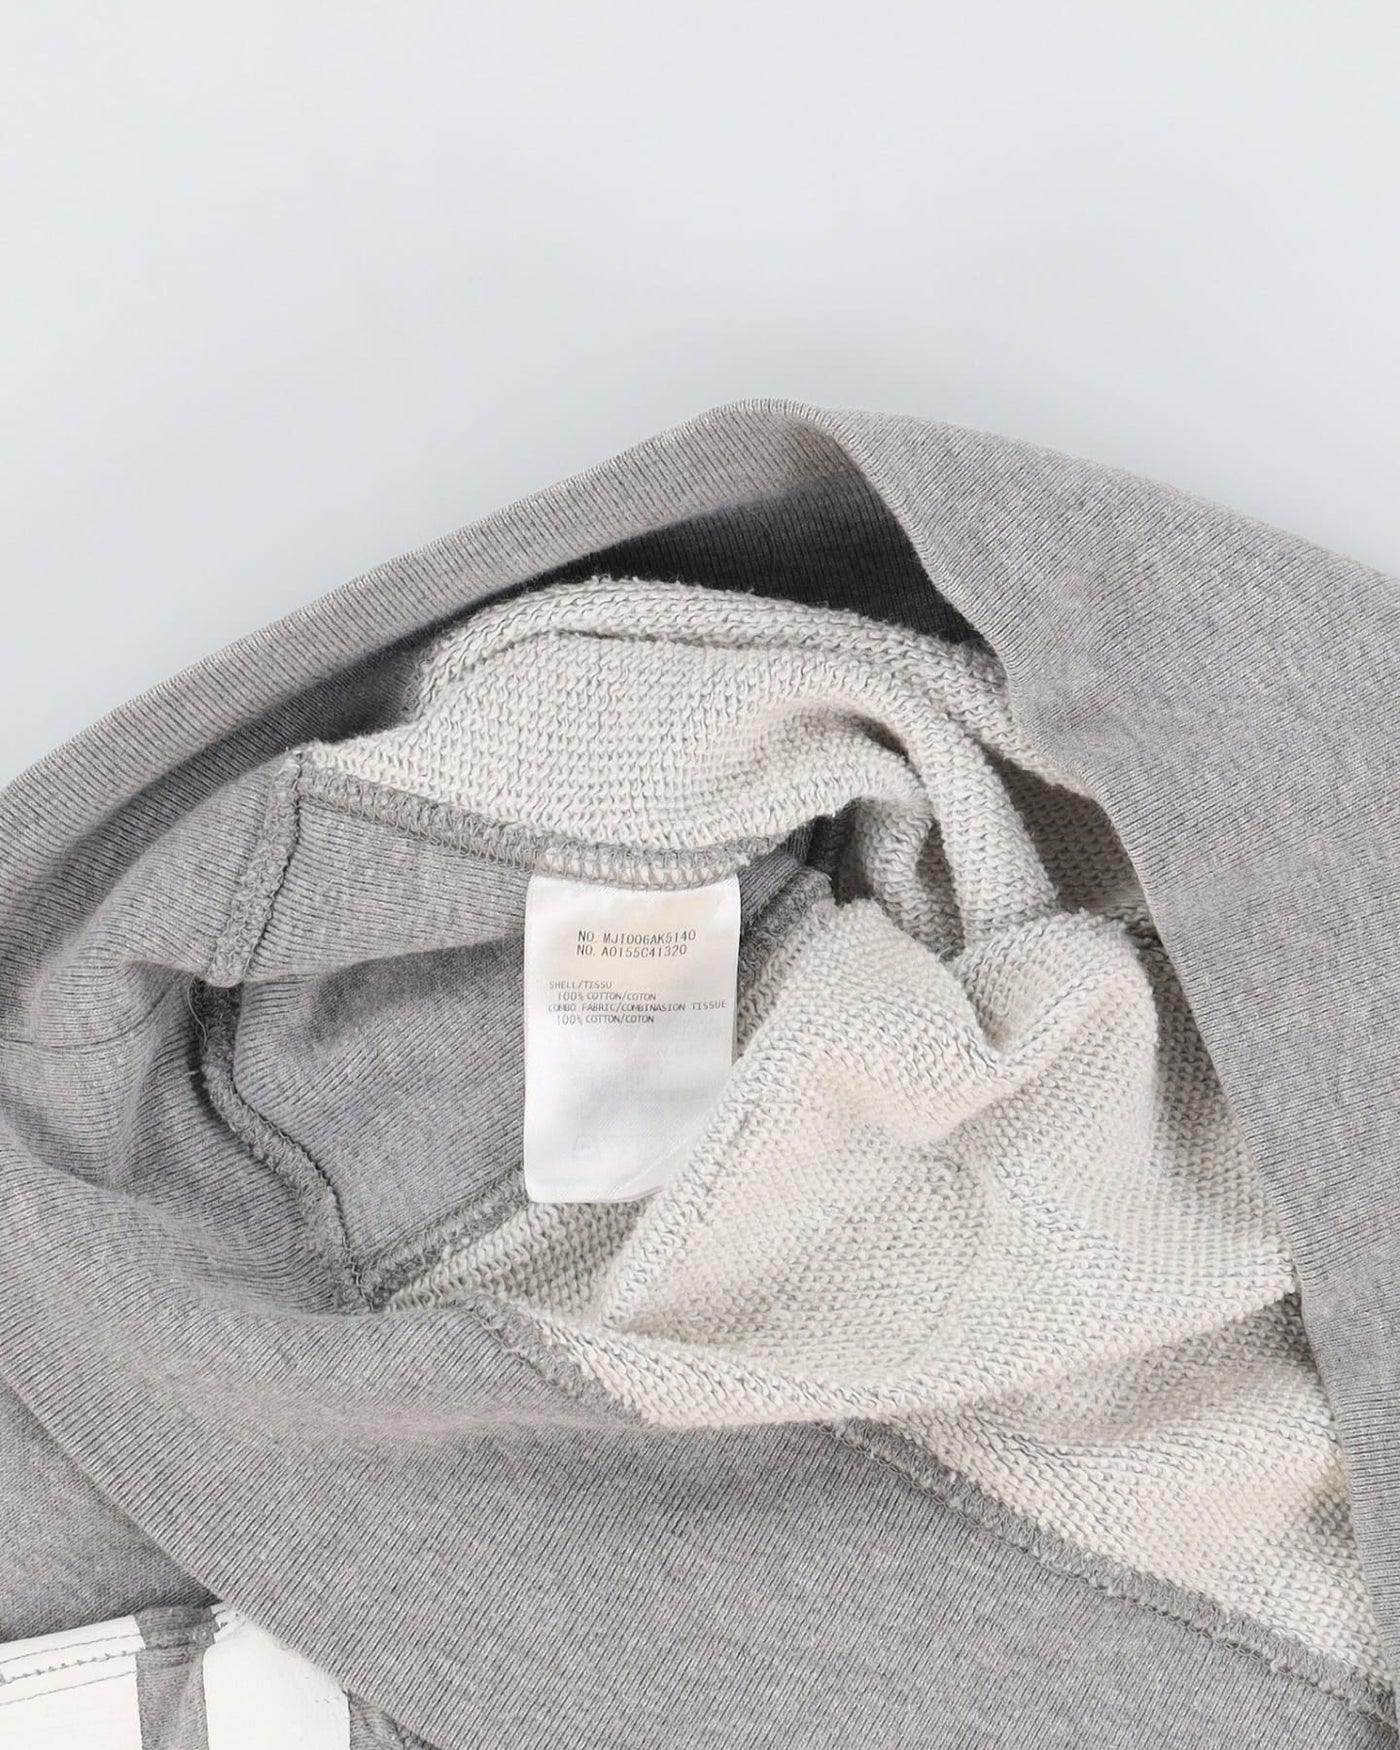 Thom Browne Grey Sweatshirt - L